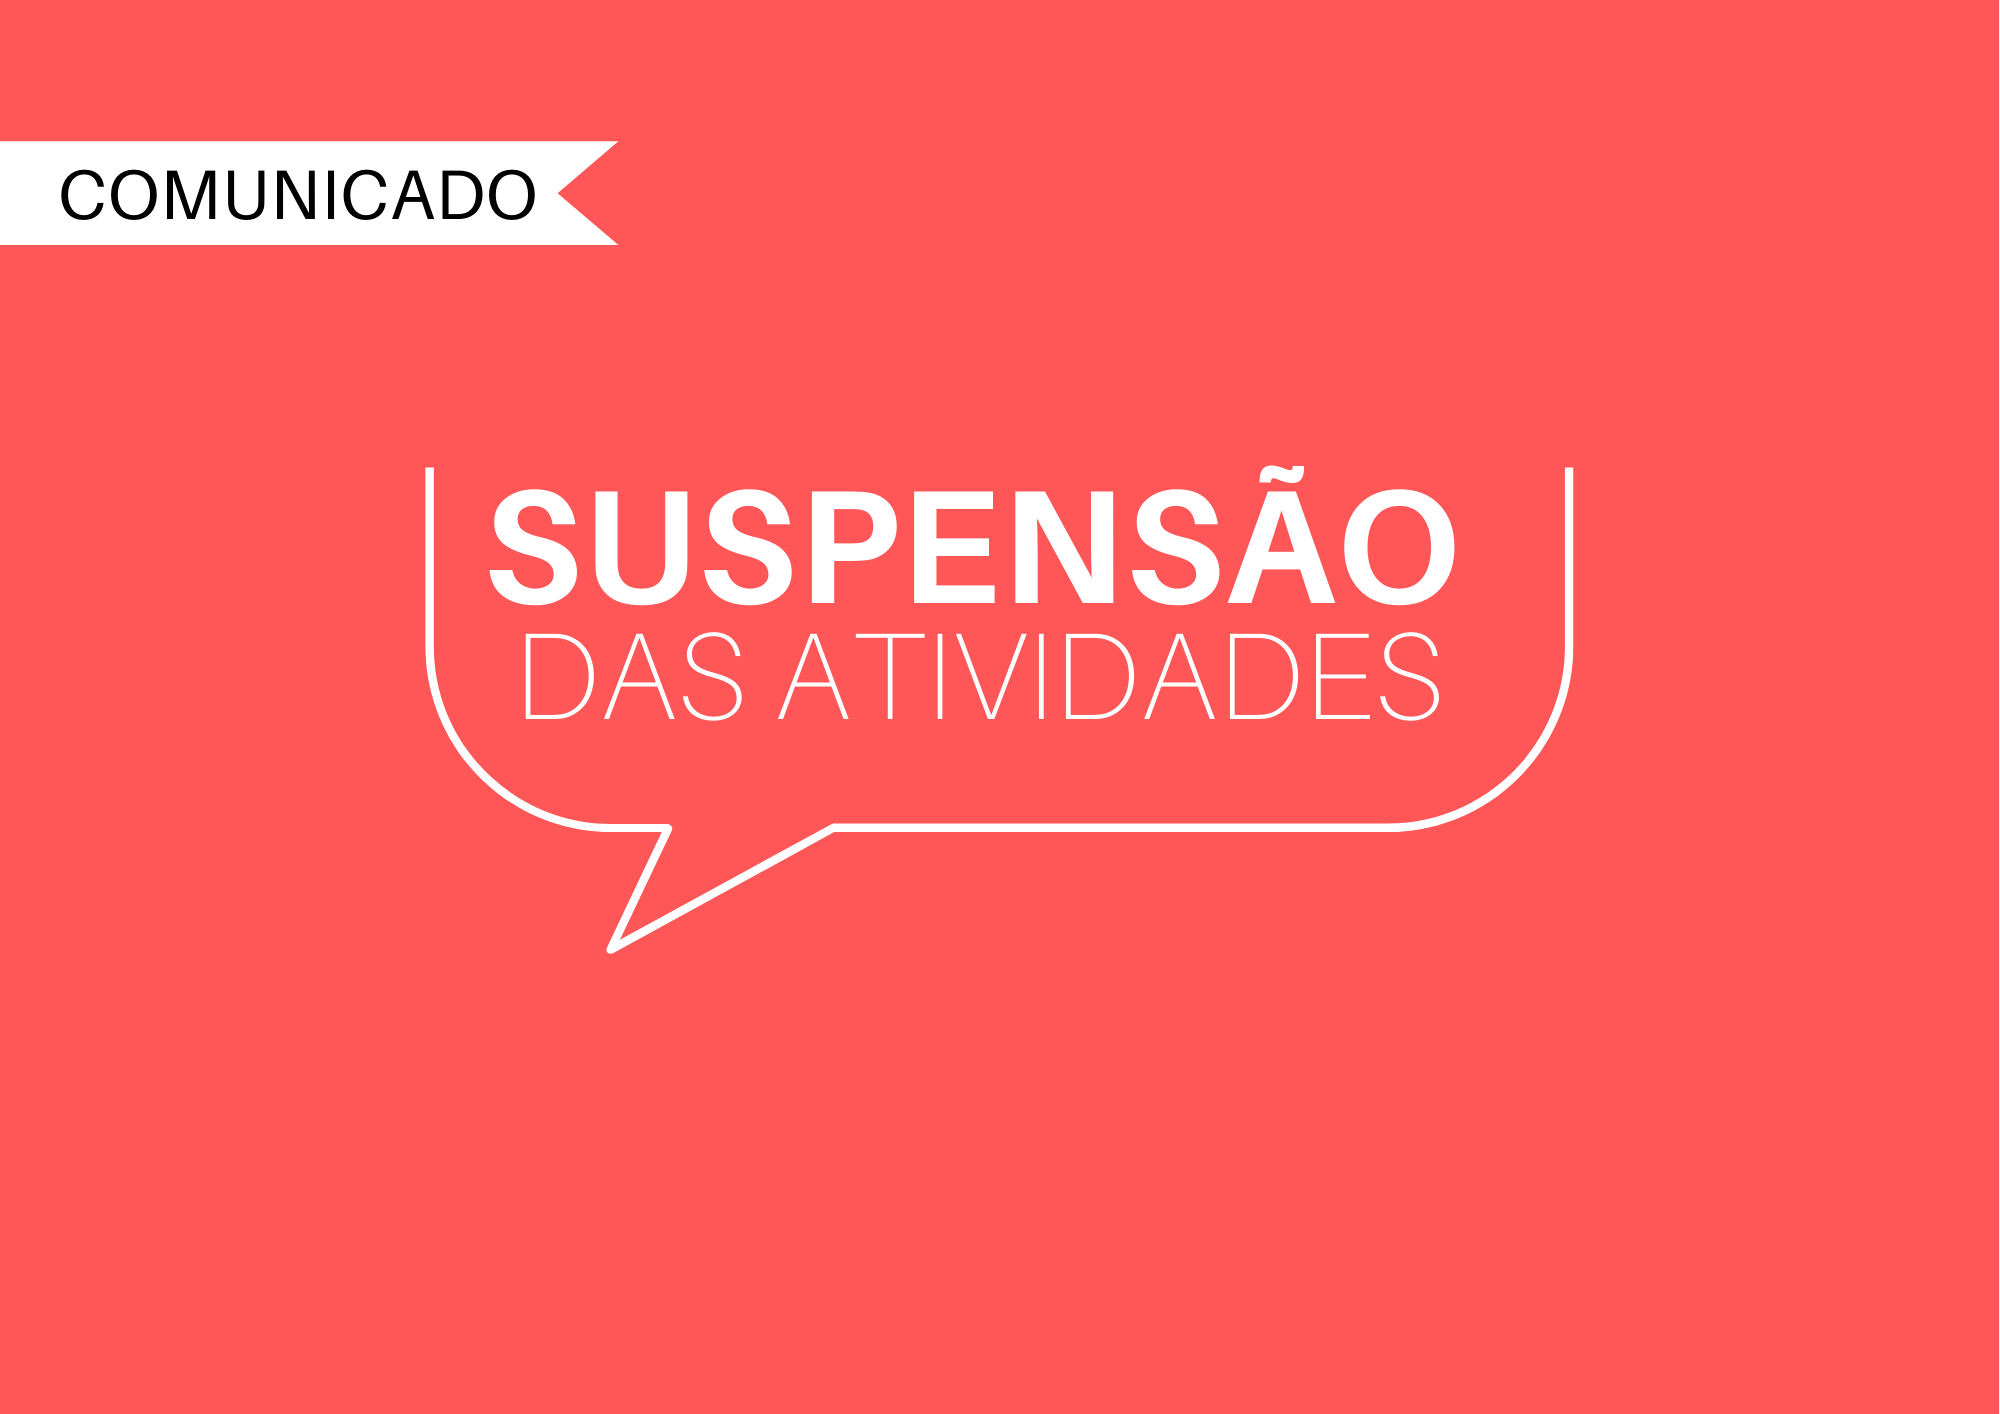 Sindafep mantém sede social em Curitiba fechada até 28 de fevereiro